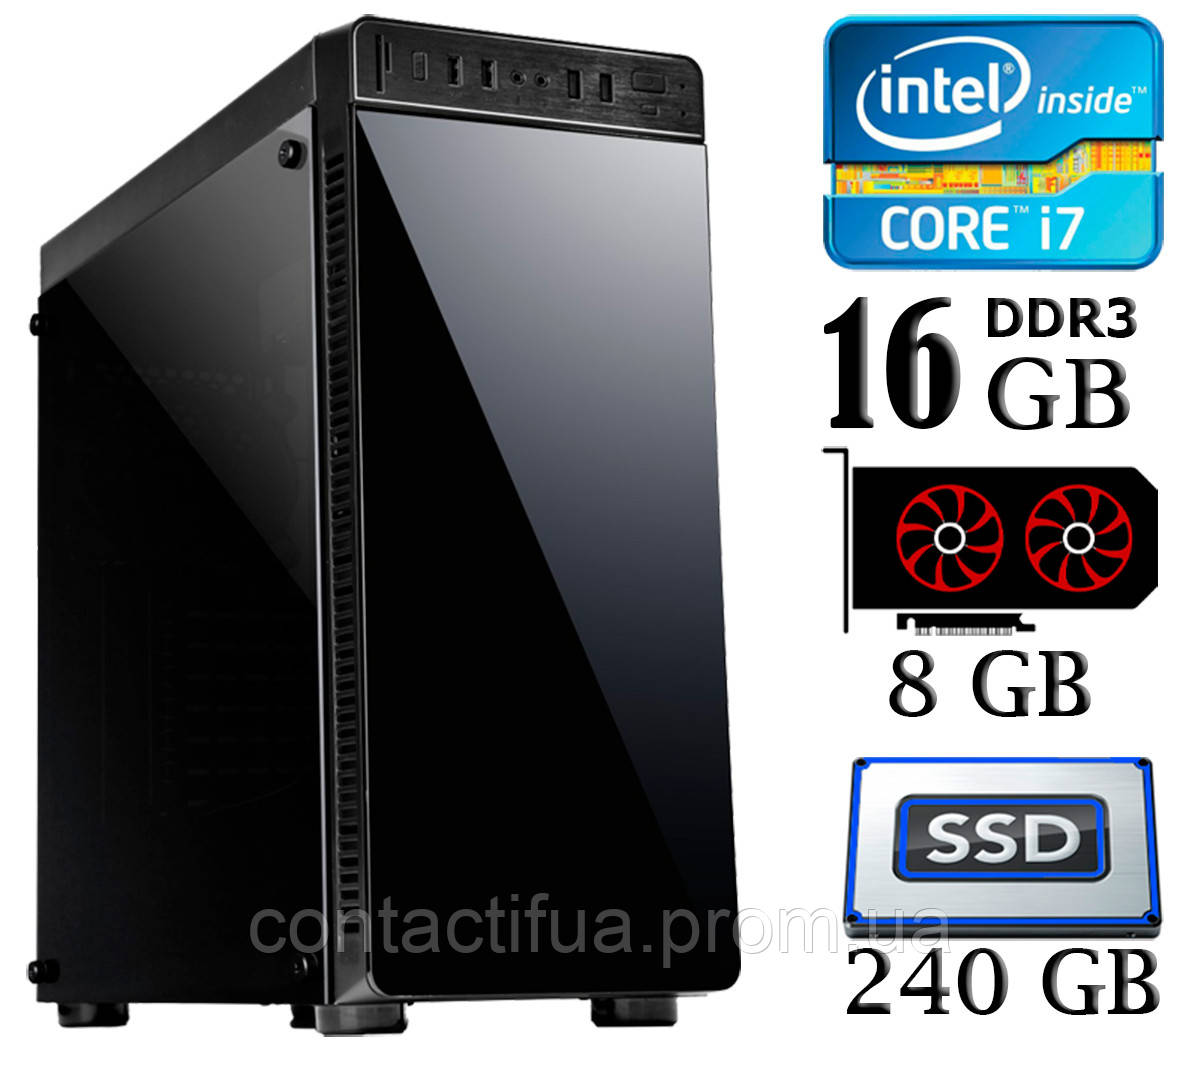 PC0897/ Intel Core i7-3770/ 16Gb DDR3/ SSD 240Gb/ HDD 1Tb/ RX 580 8Gb Нет в наличии